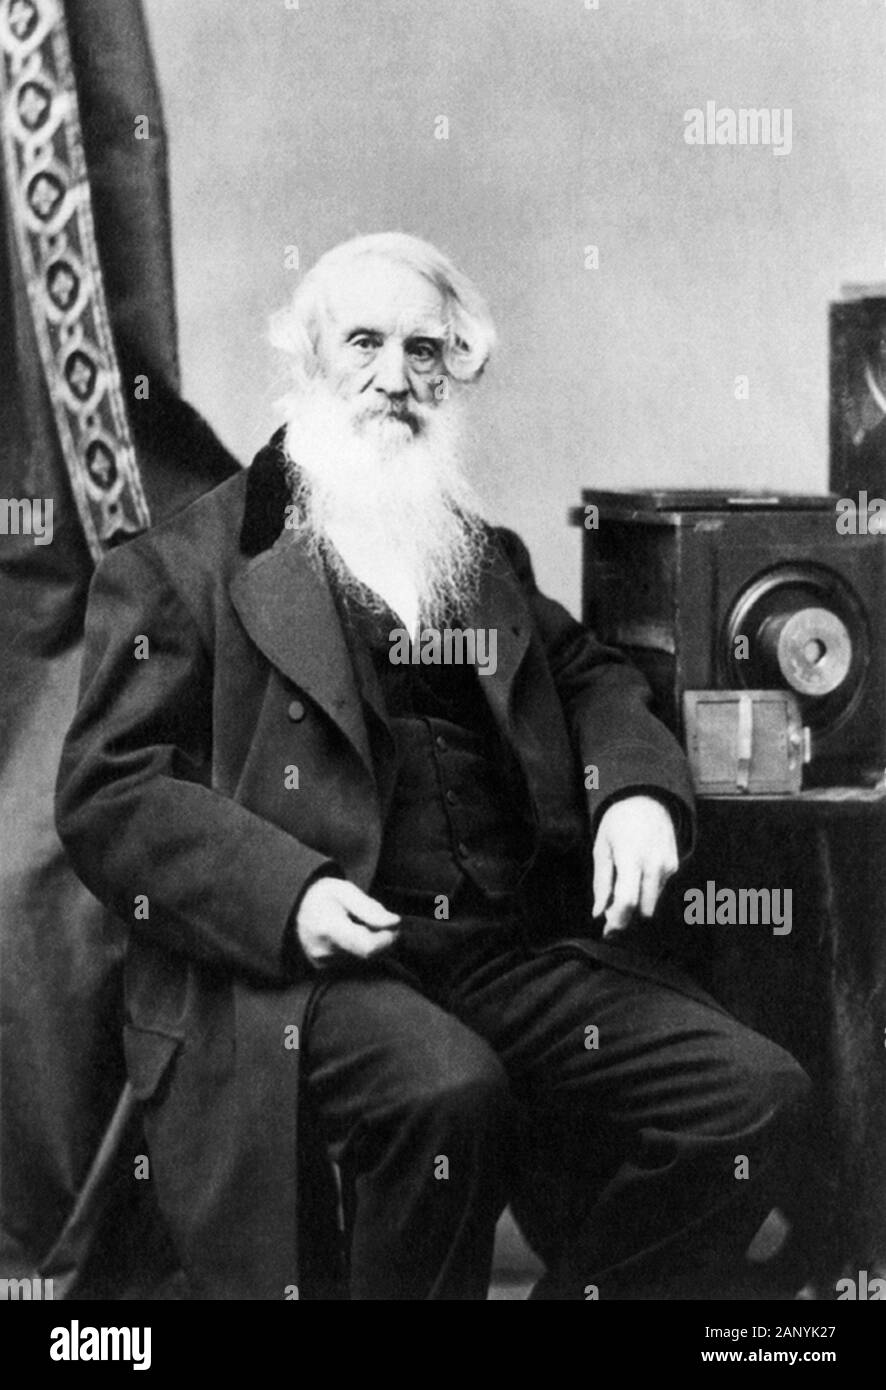 Vintage-Porträt des amerikanischen Malers und Erfinders Samuel F B Morse (170-1872) - ein Pionier in der Entwicklung des elektrischen Telegrafen und Mitschöpfers von Morse Code. Foto ca. 1872 von Abraham Bogardus aus New York, das Morse neben einer Kamera und Glasplattennegativen zeigt. Stockfoto